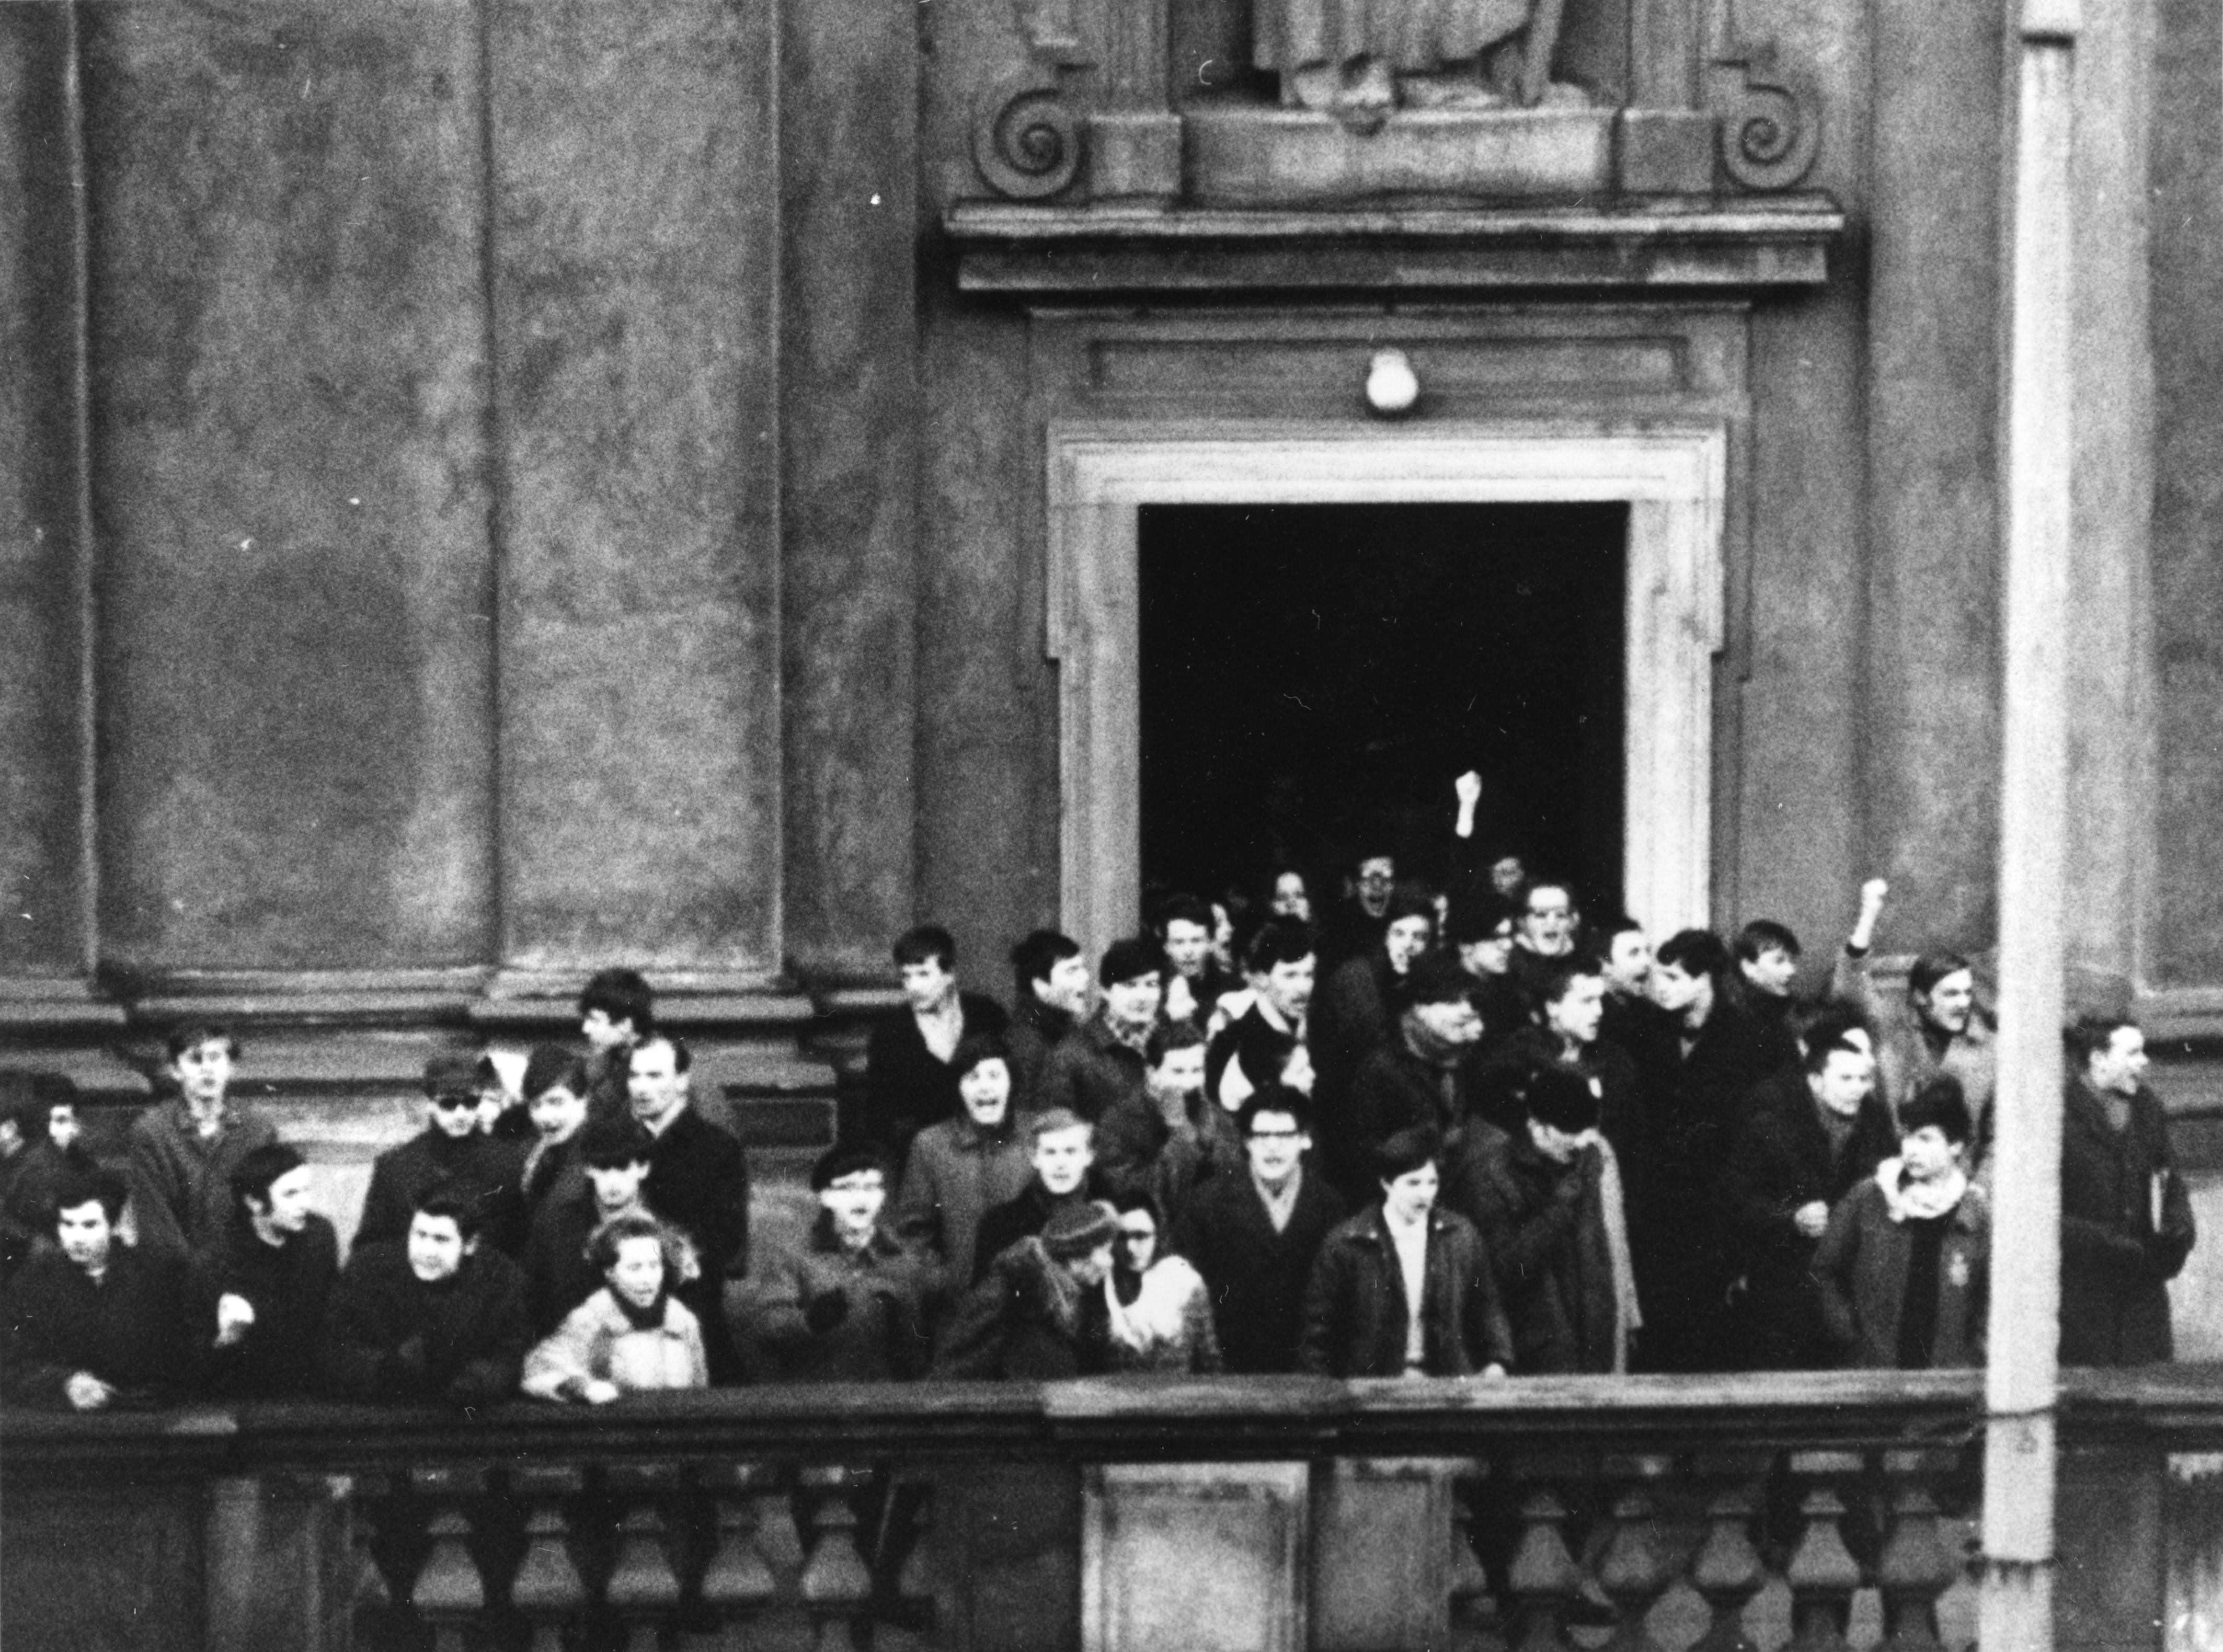 Wydarzenia Marca 1968 w Warszawie. IPNBU-3-19-1-48. Protestujący studenci na schodach przed drzwiami kościoła pod wezwaniem Świętego Krzyża, przy ulicy Krakowskie Przedmieście w Warszawie